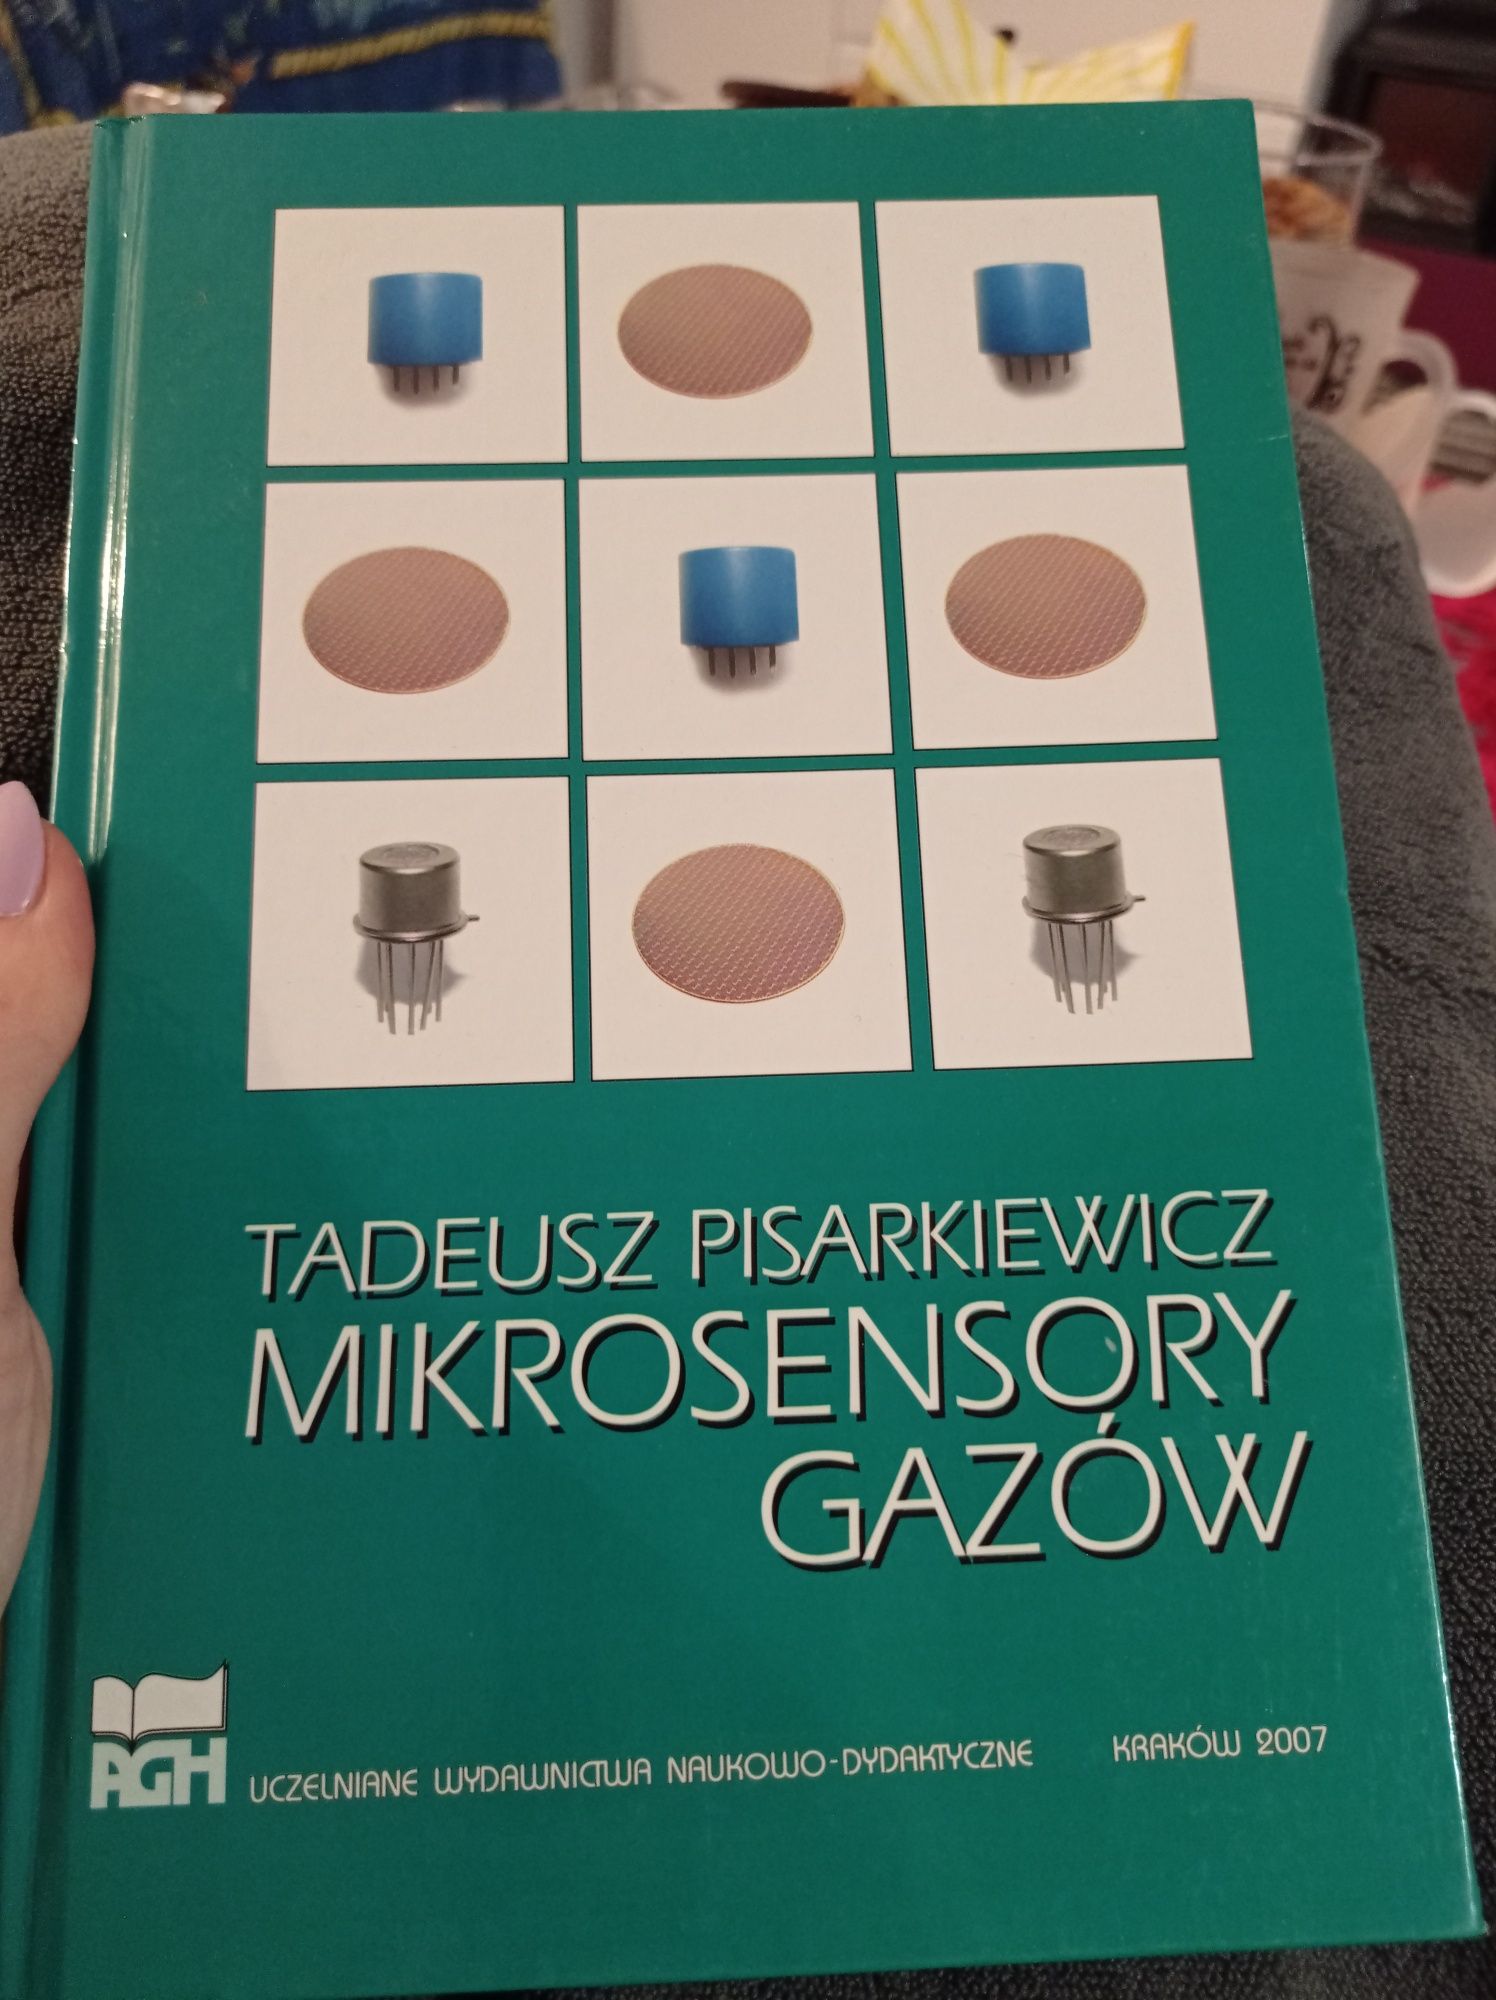 Tadeusz Pisarkiewicz mikrosensory gazów